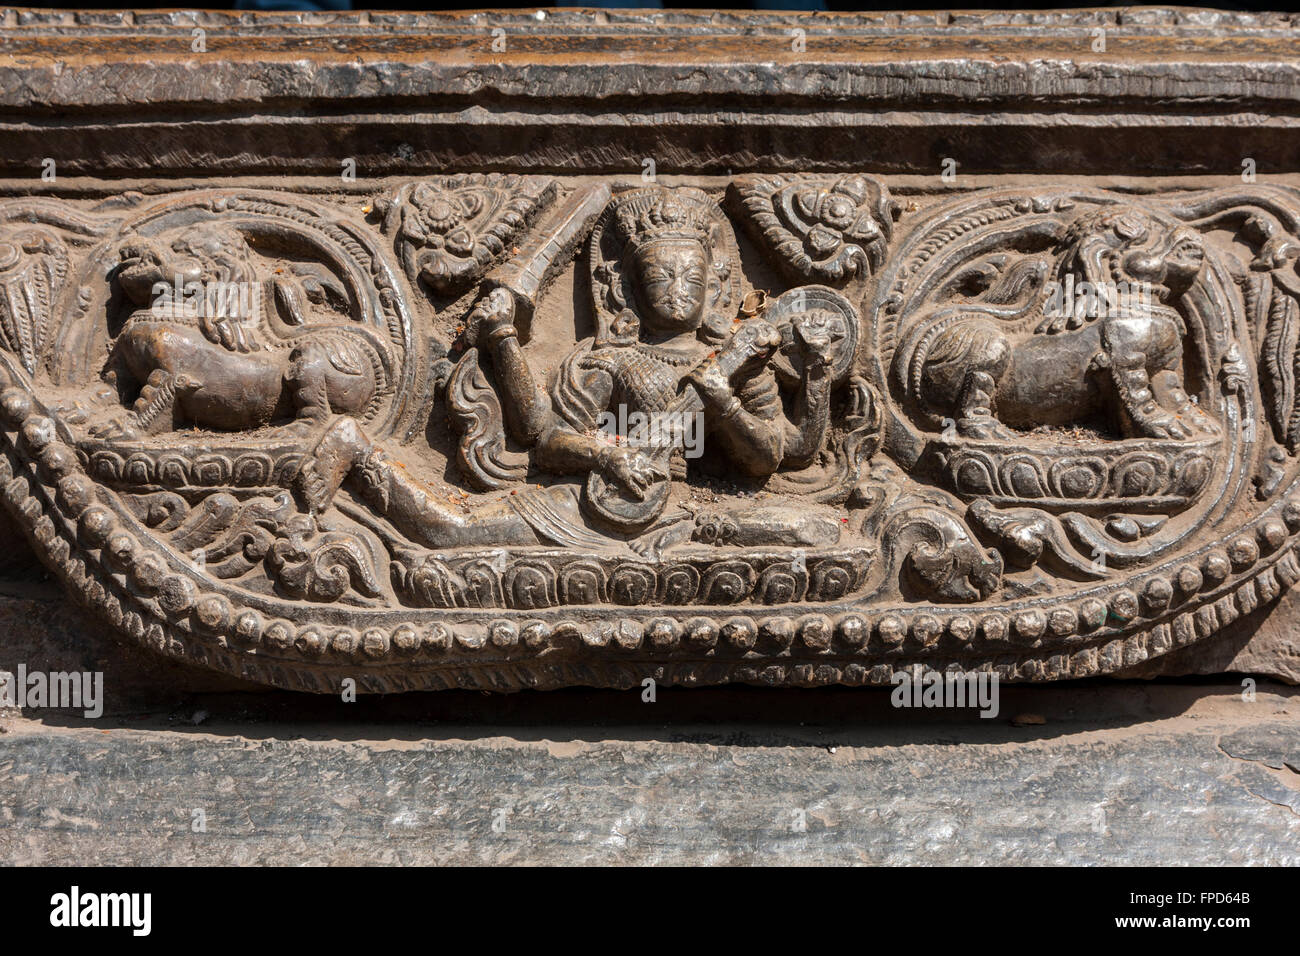 Le Népal, Patan, Durbar Square. La sculpture sur pierre, Vishwanath Mandir, jouant d'un instrument. Banque D'Images